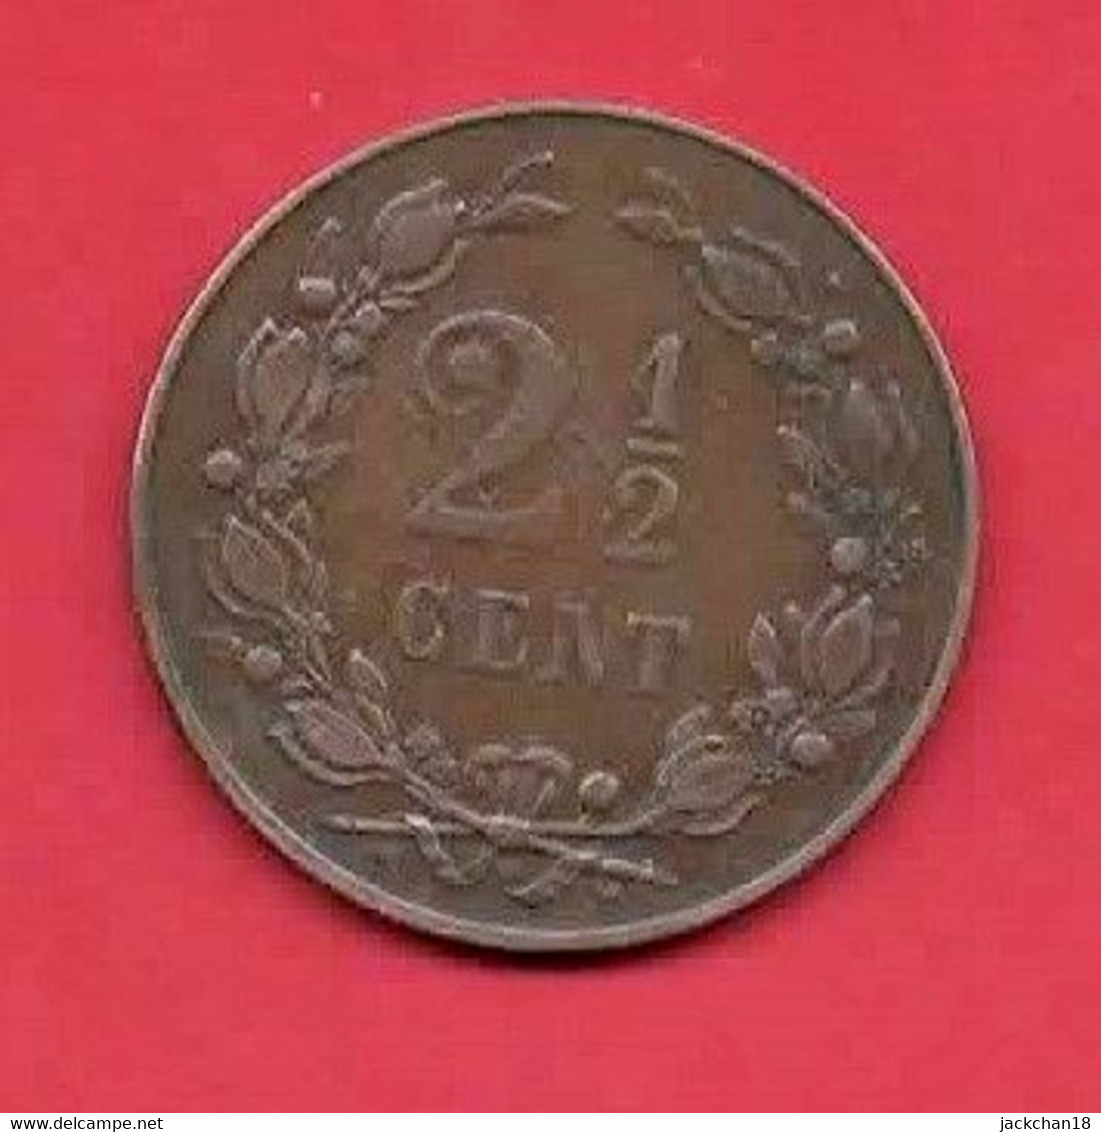 -- MONNAIE PAYS-BAS / KONINGRIJK DER NEDERLANDEN / 2 1/2 CENT / 1898 -- - 2.5 Centavos